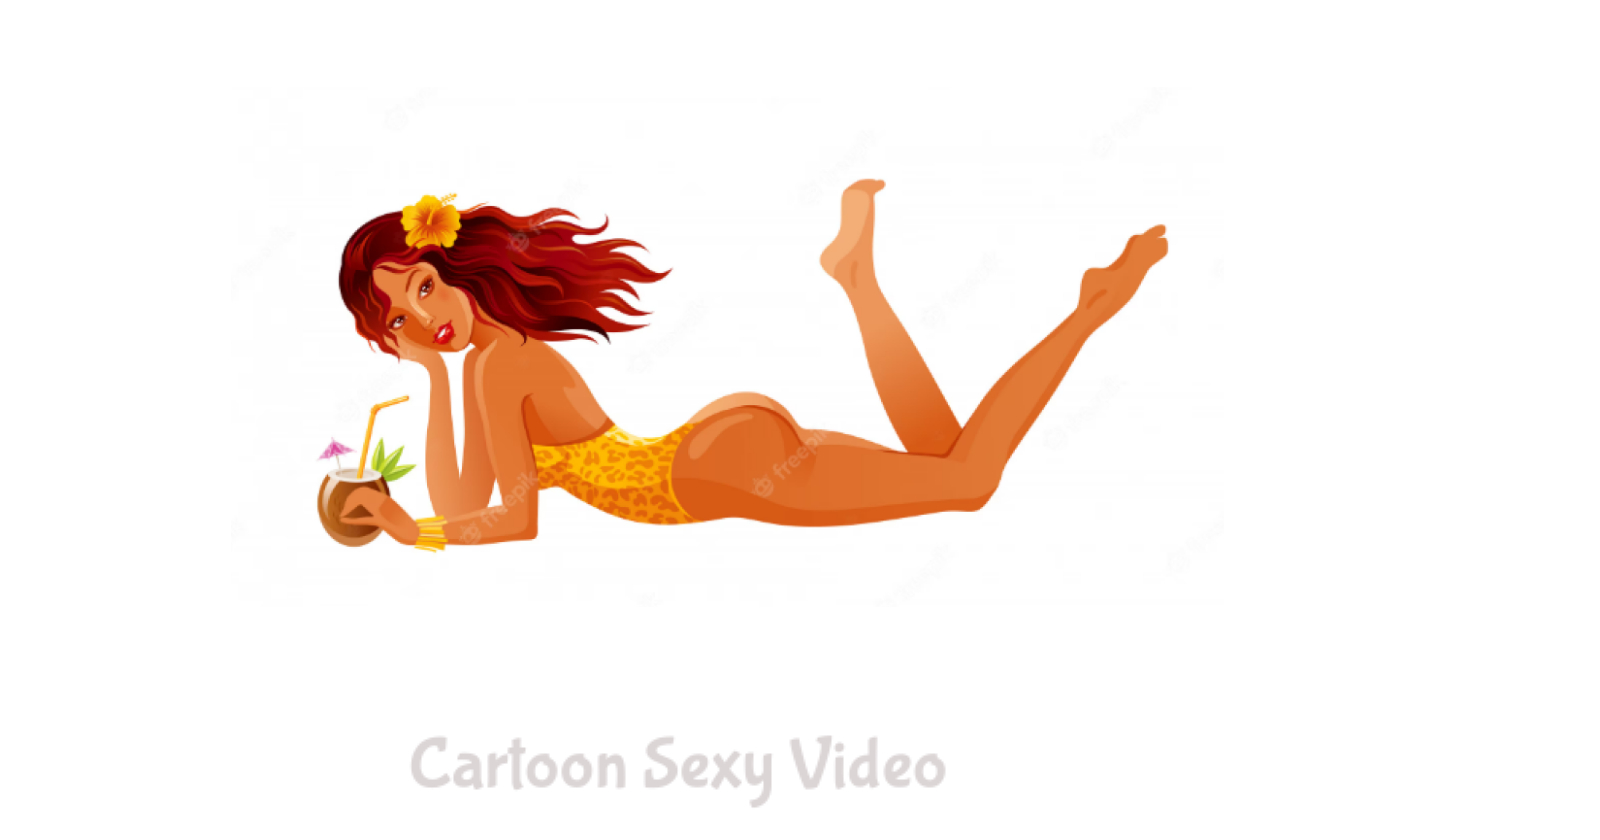 Cartoon sexy video